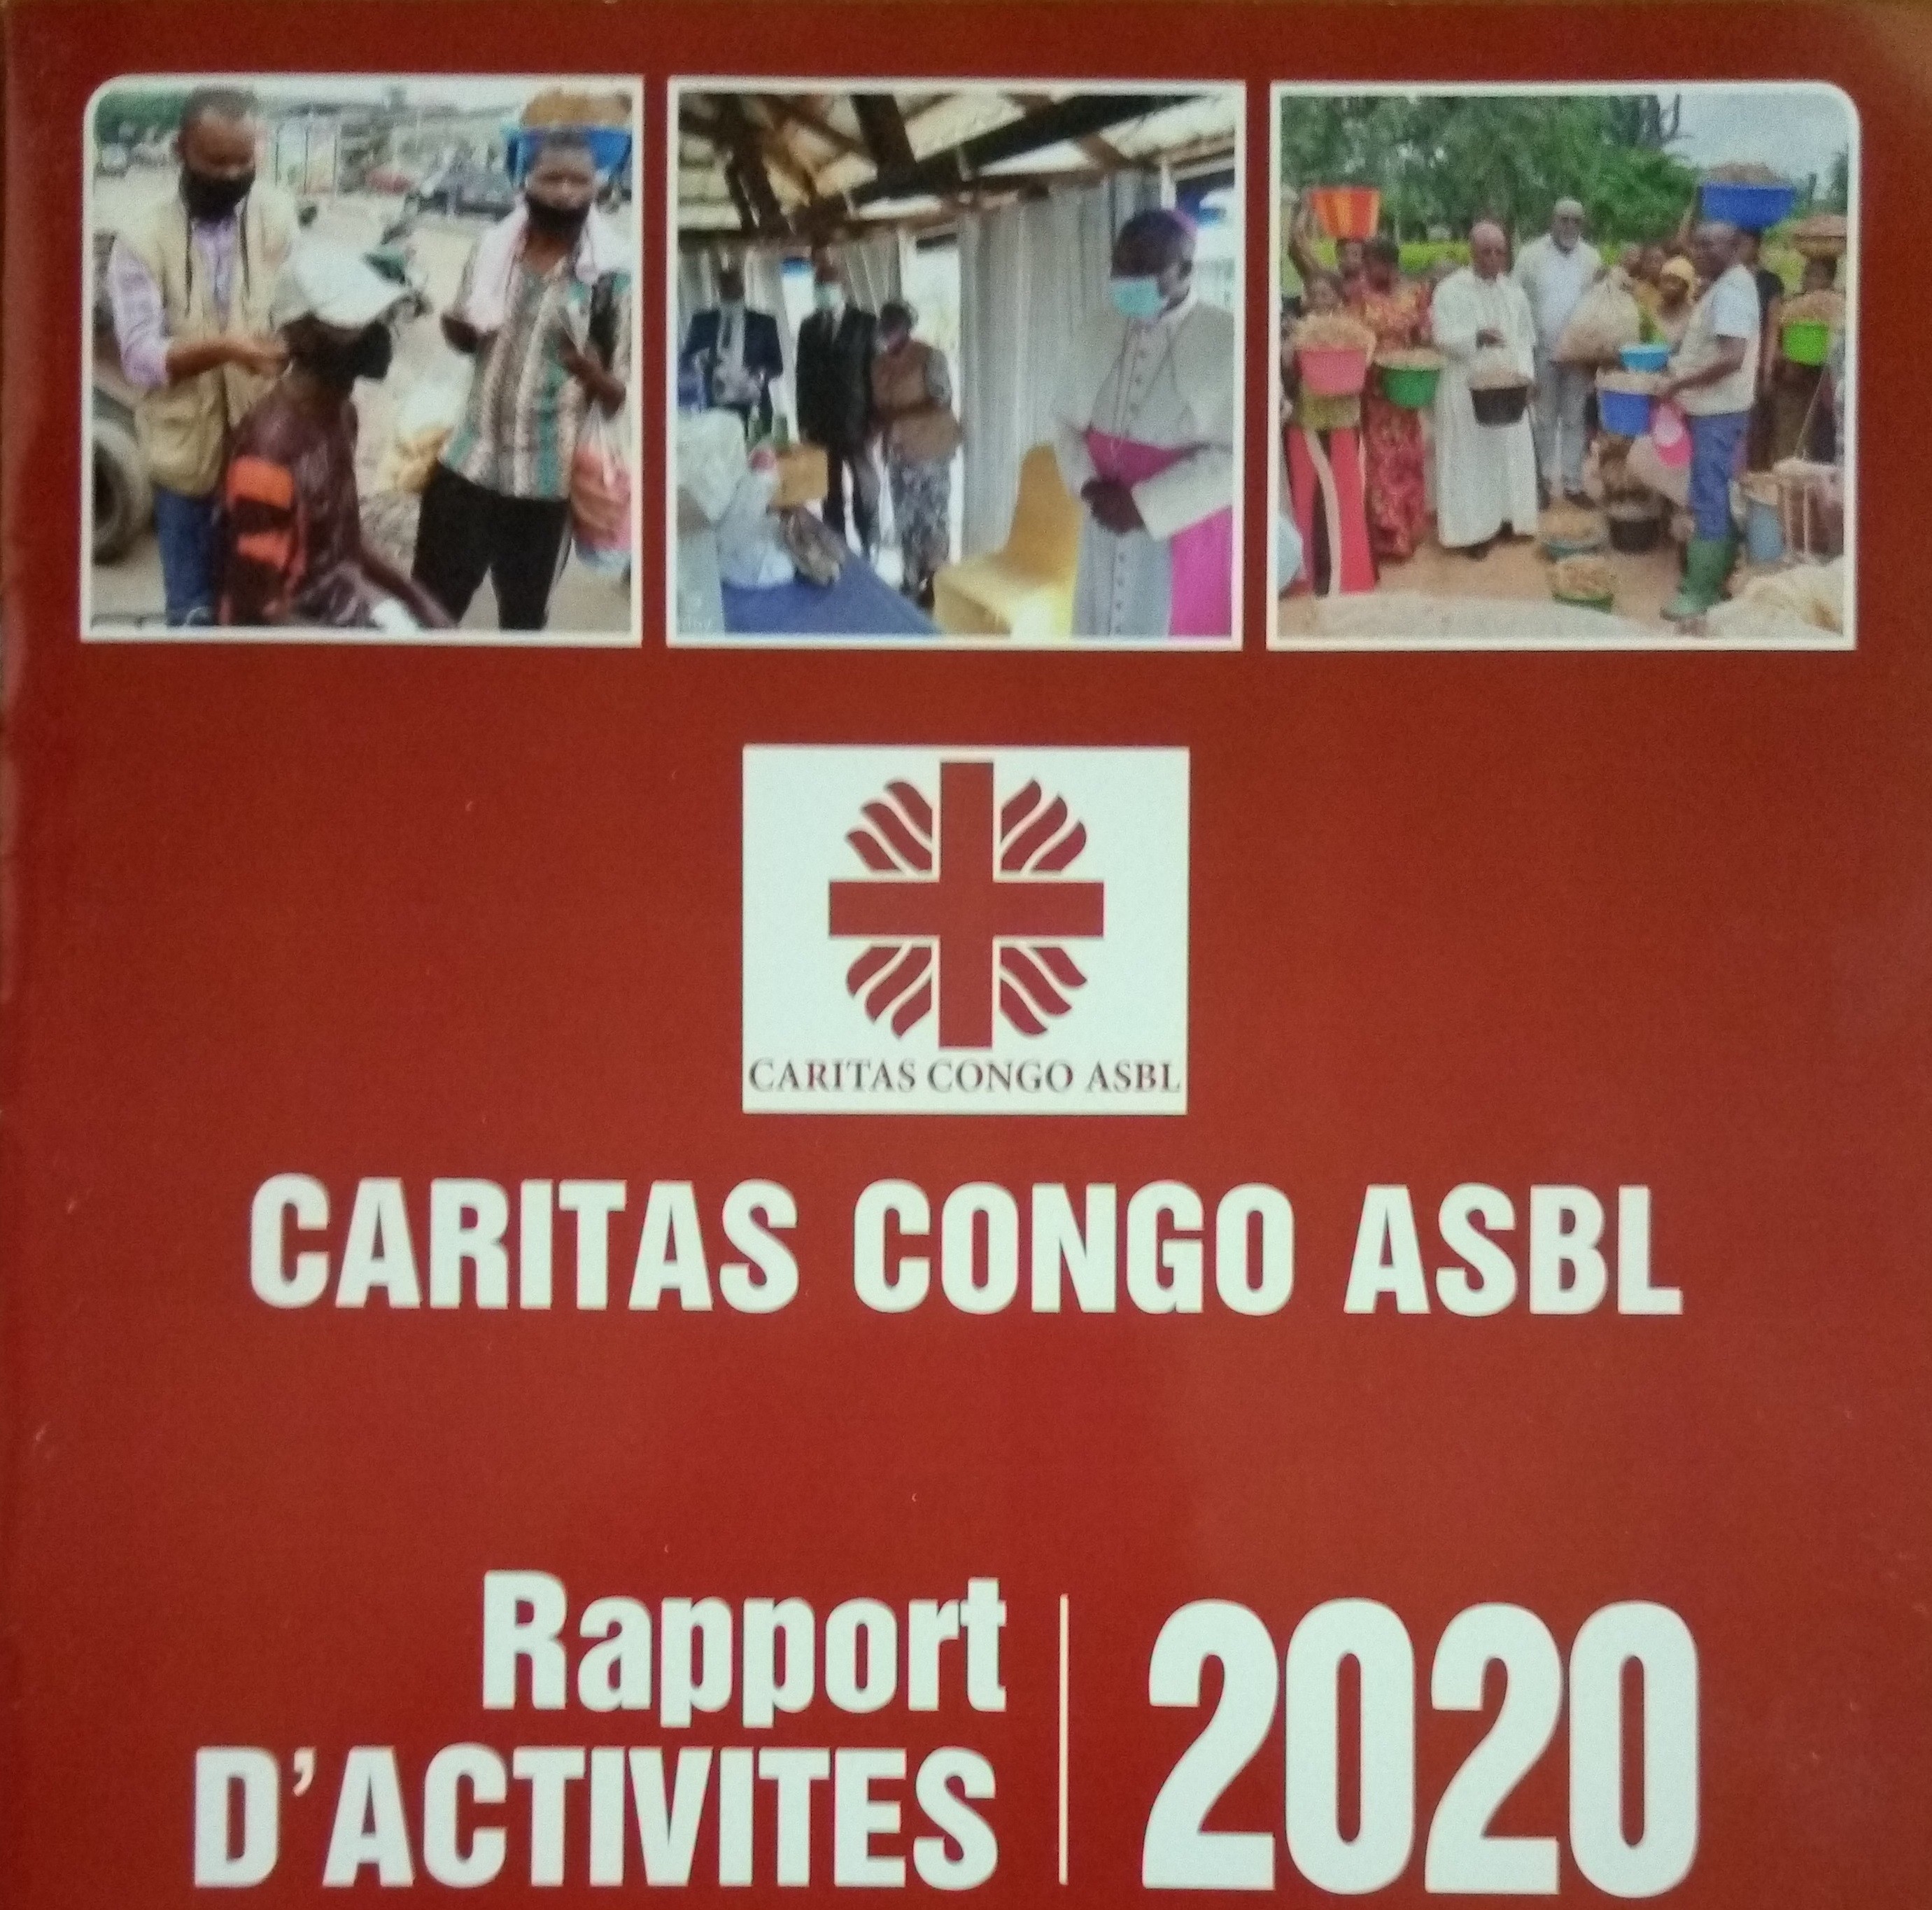 Rapport annuel 2020 de la Caritas Congo Asbl : 27% des 11,2 millions USD mobilisés affectés à l’appui à la riposte contre la Covid-19 